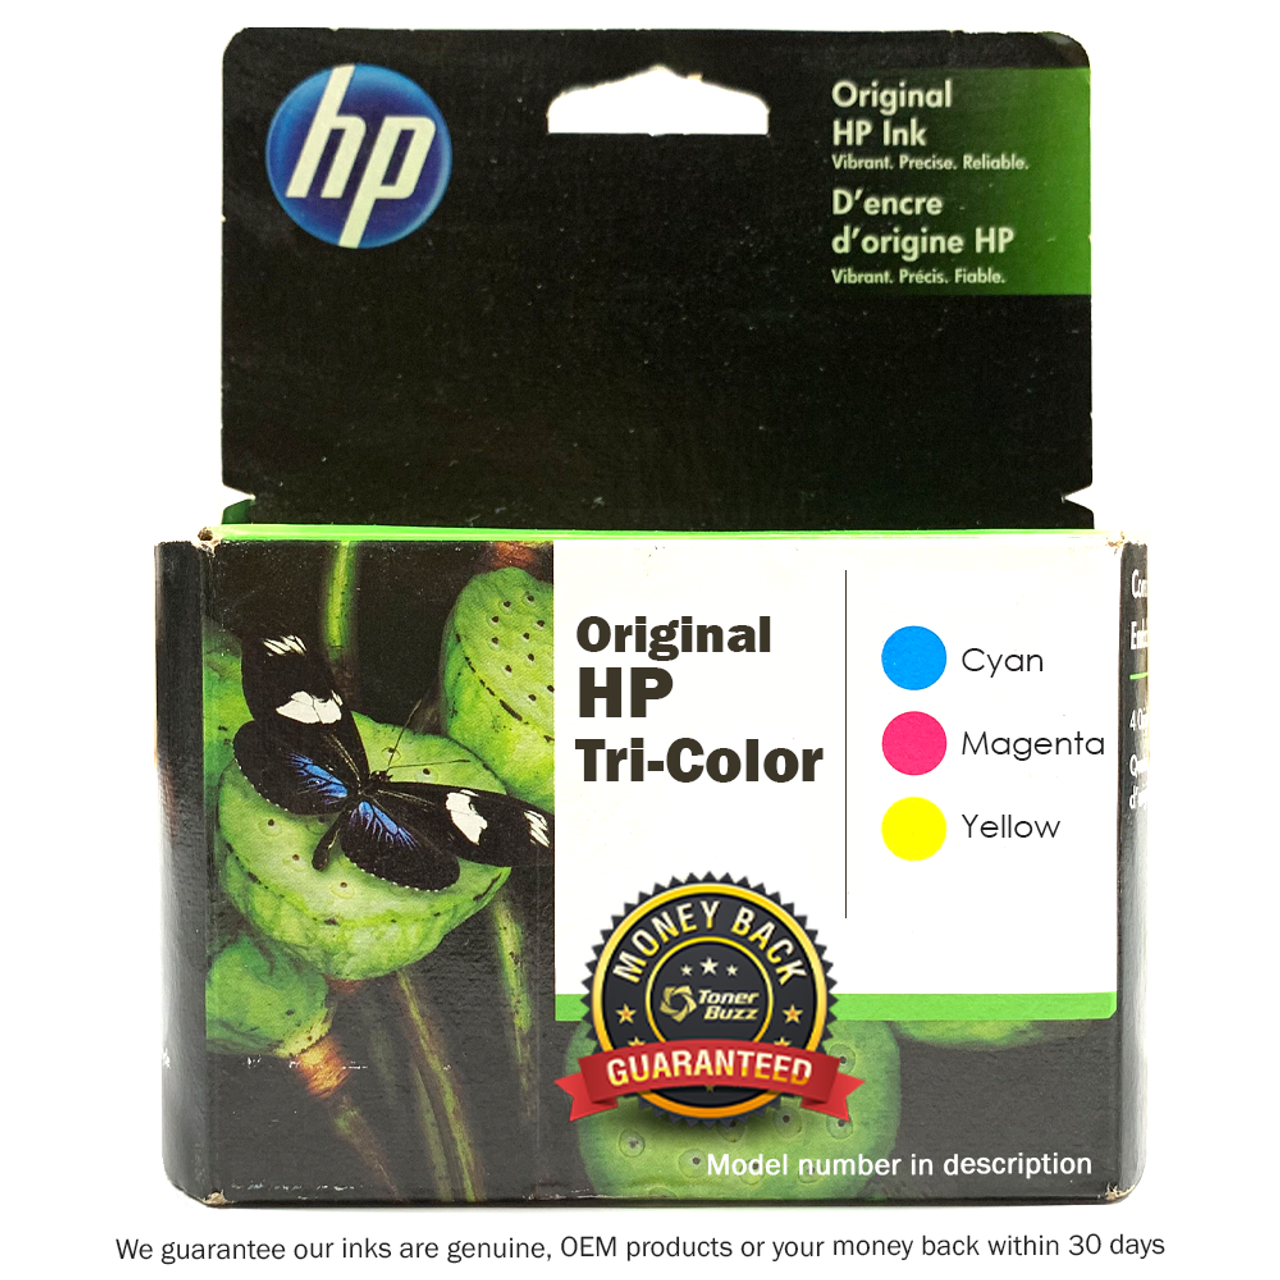 HP 110 Tri-color Original Ink Cartridge